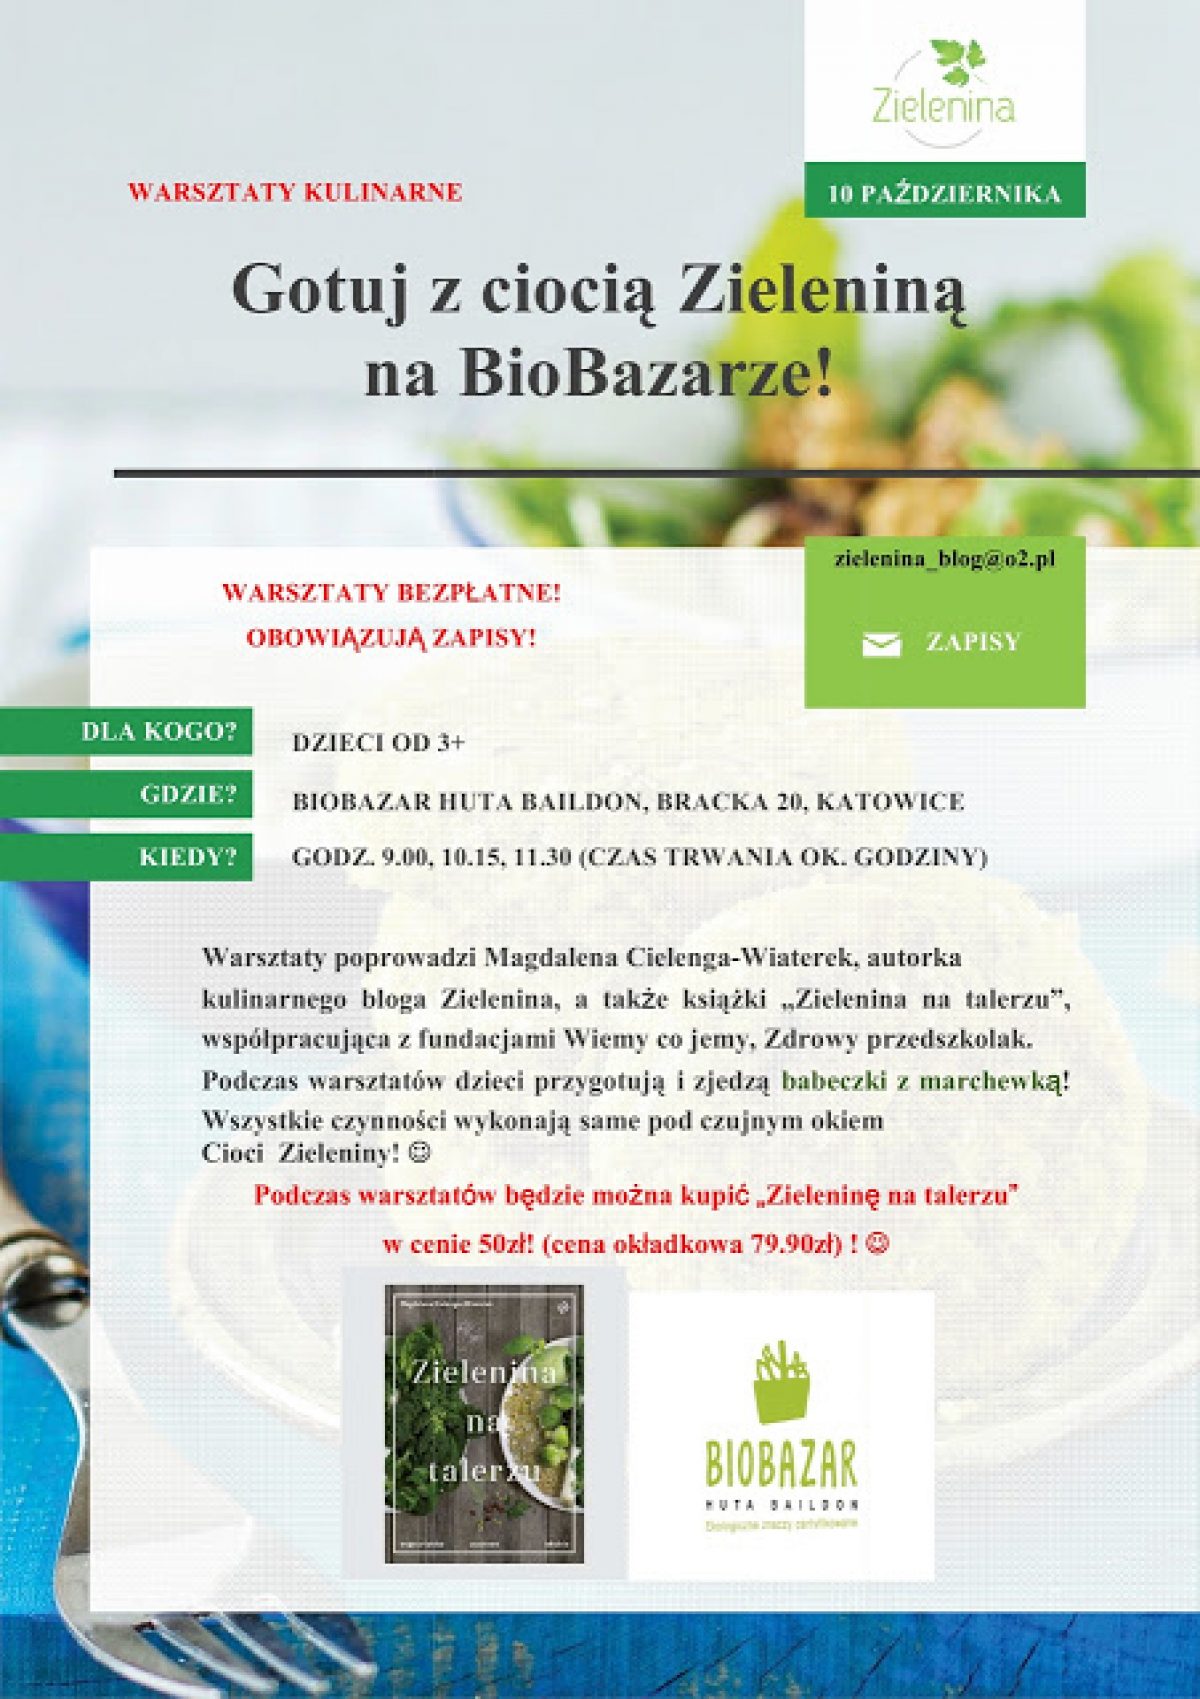 Bezpłatne warsztaty kulinarne dla dzieci na katowickim BioBazarze!